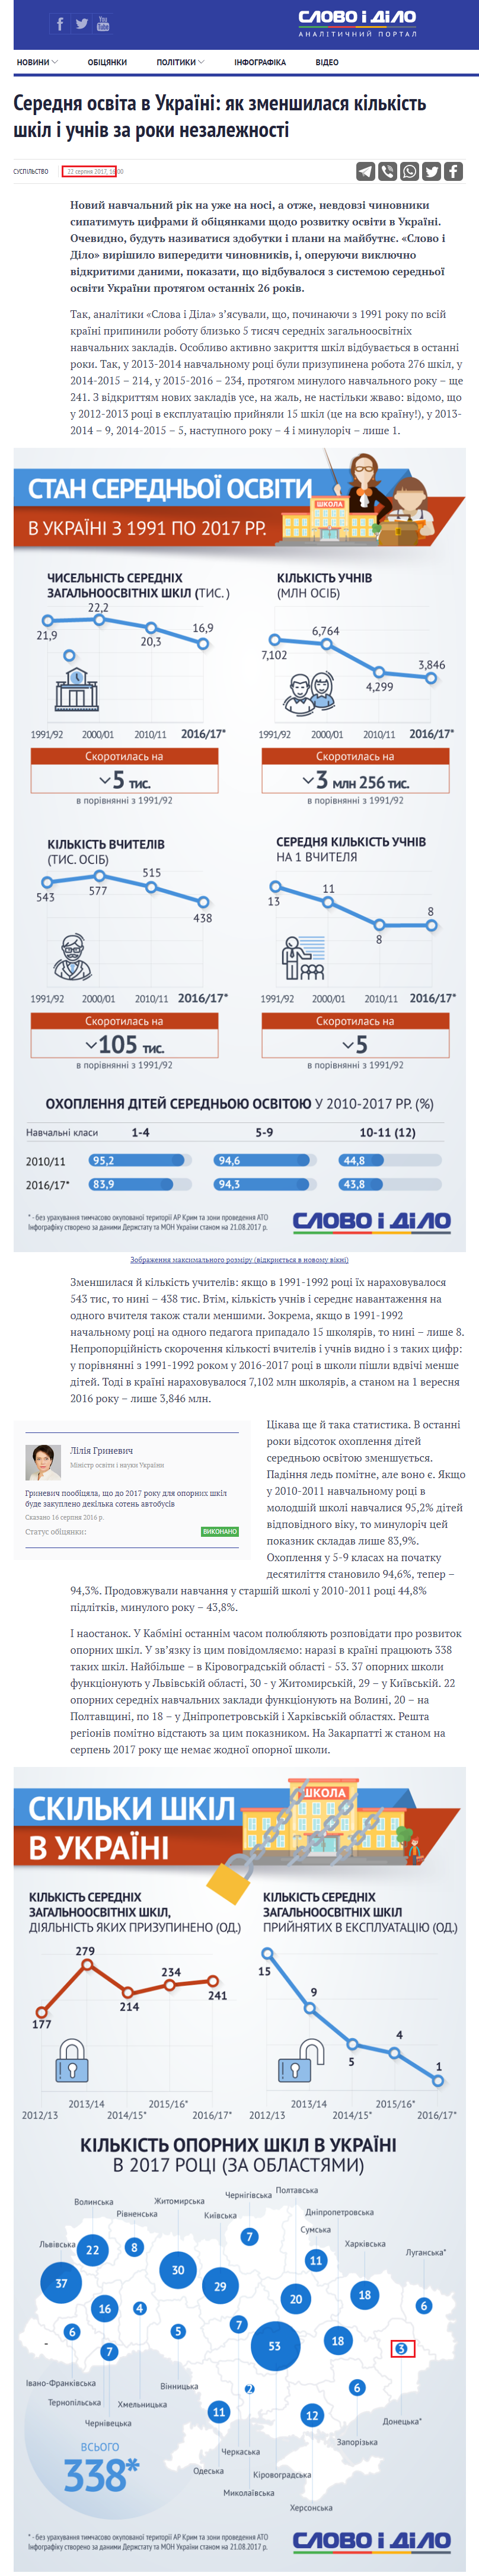 https://www.slovoidilo.ua/2017/08/22/infografika/suspilstvo/serednya-osvita-ukrayini-yak-zmenshylasya-kilkist-shkil-uchniv-roky-nezalezhnosti